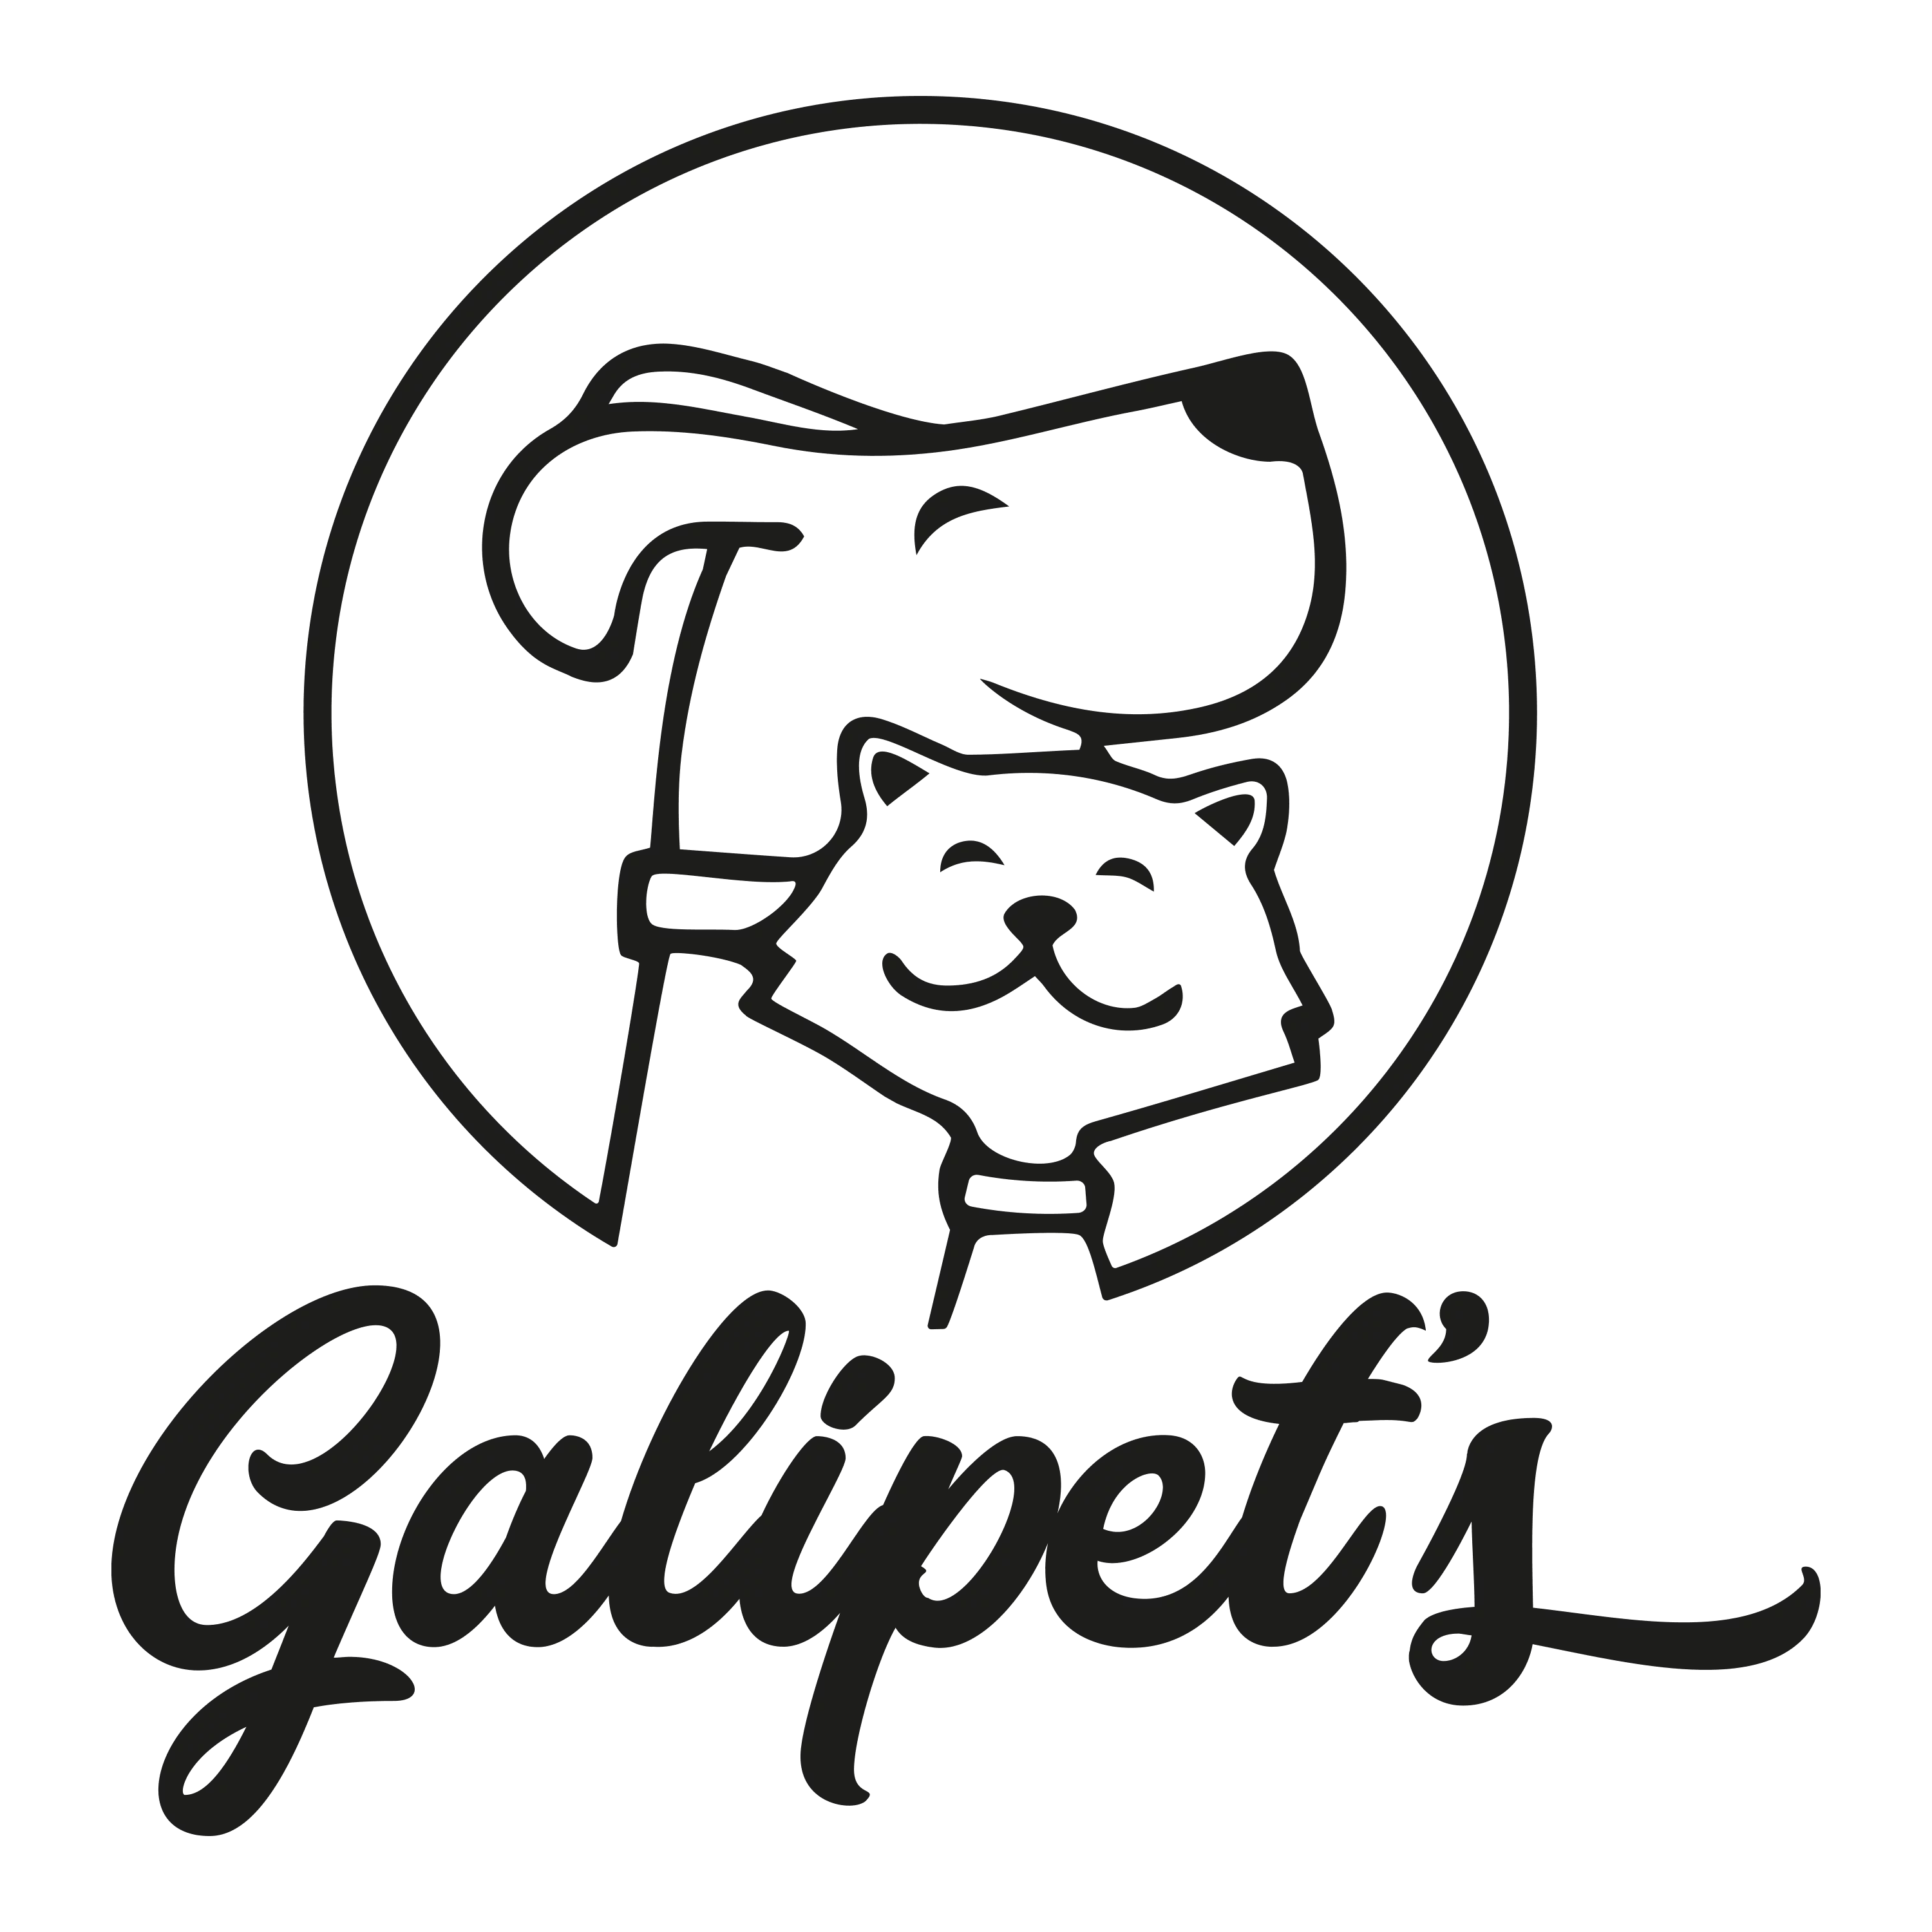 Galipet's